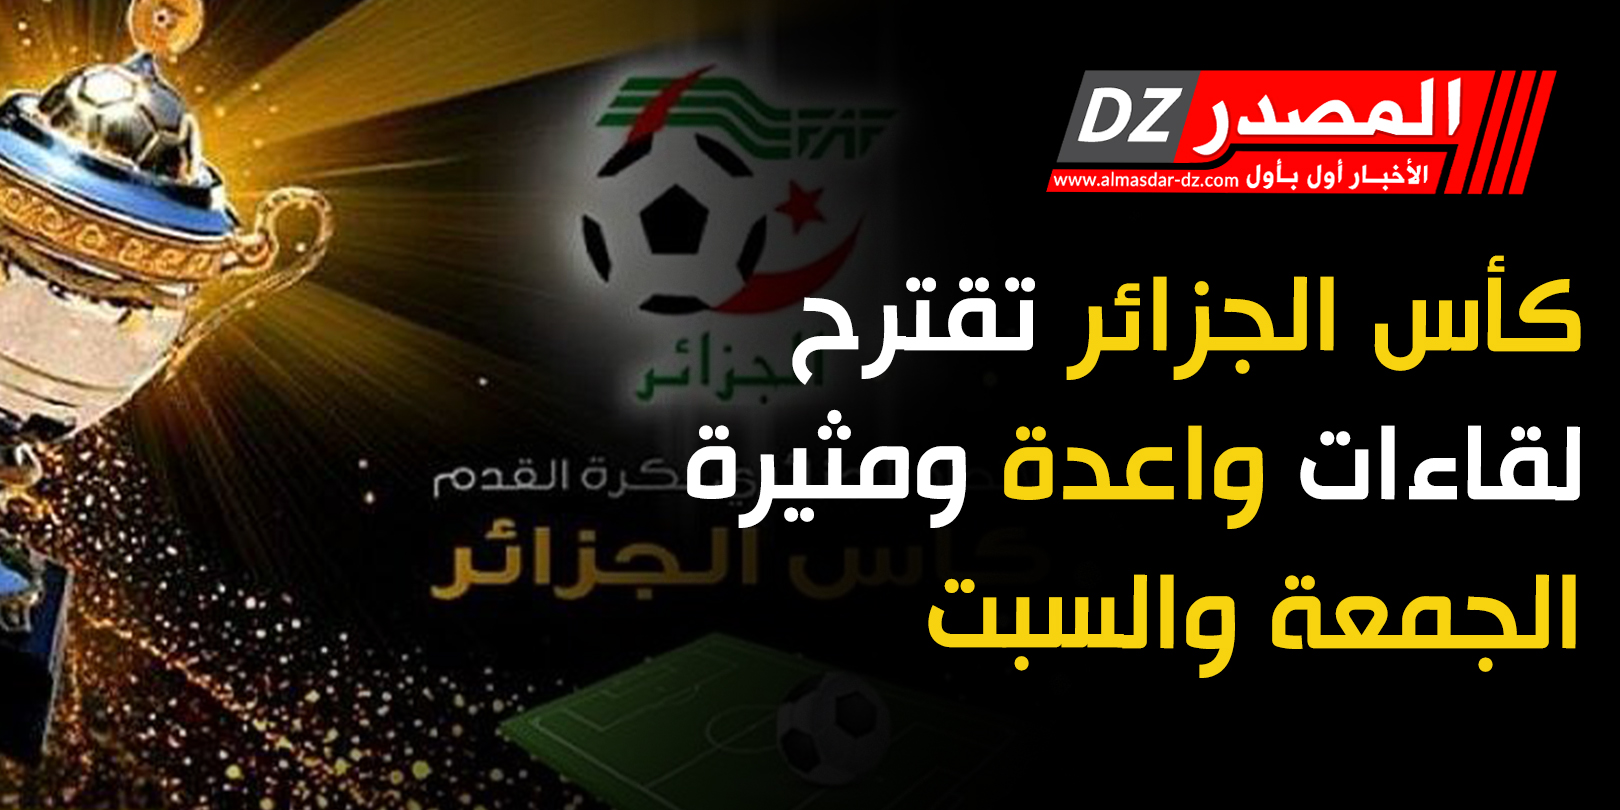 2018/02/كأس-الجزائر.jpg